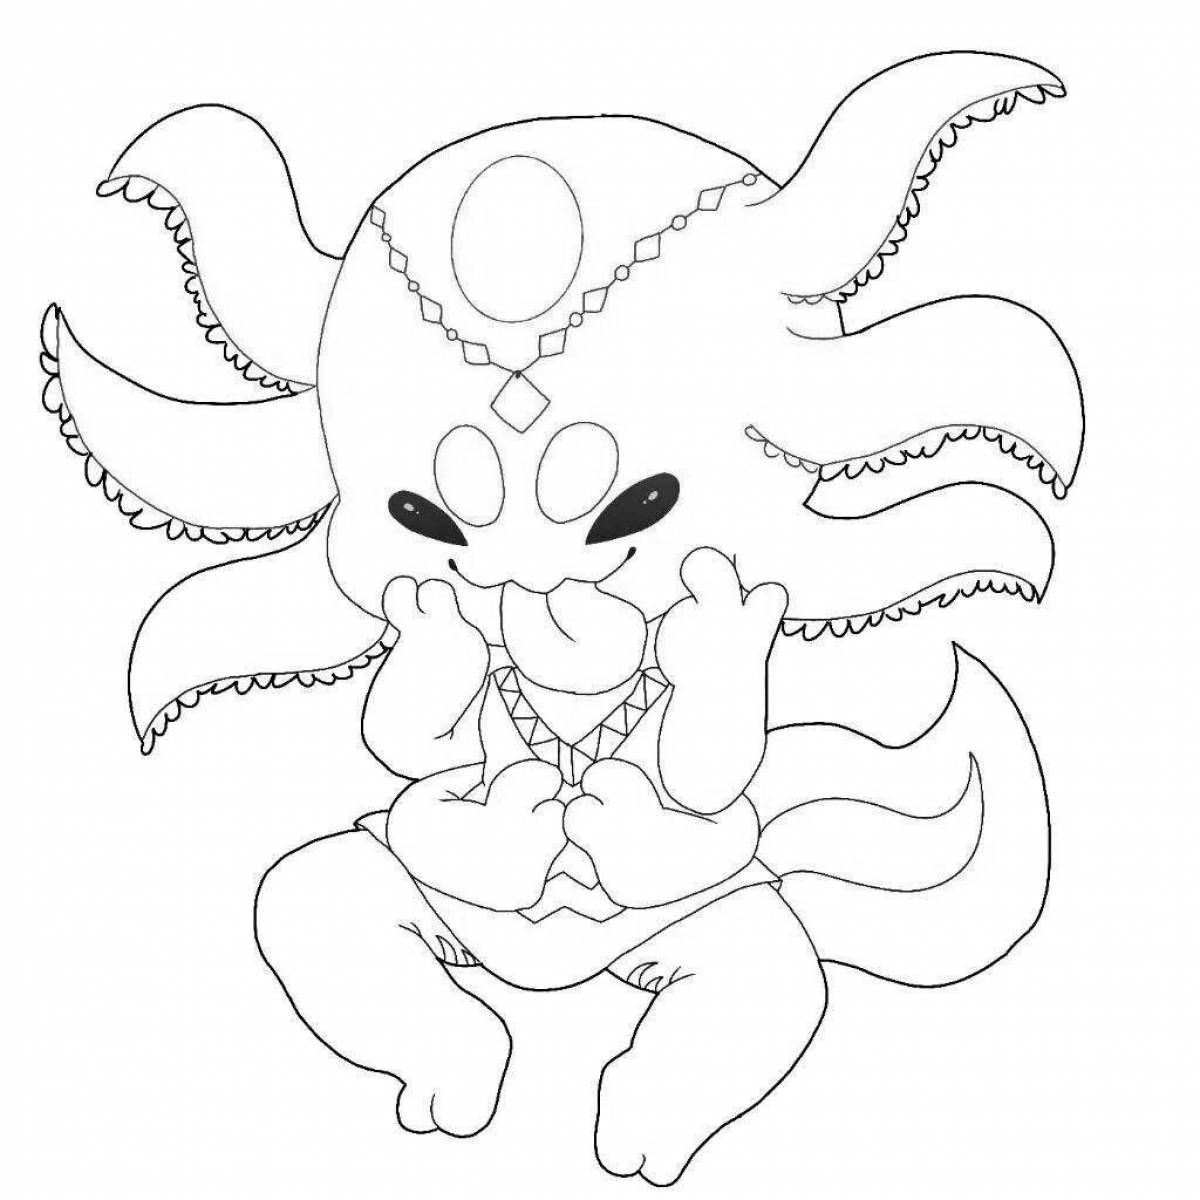 Axolotl fun coloring from minecraft